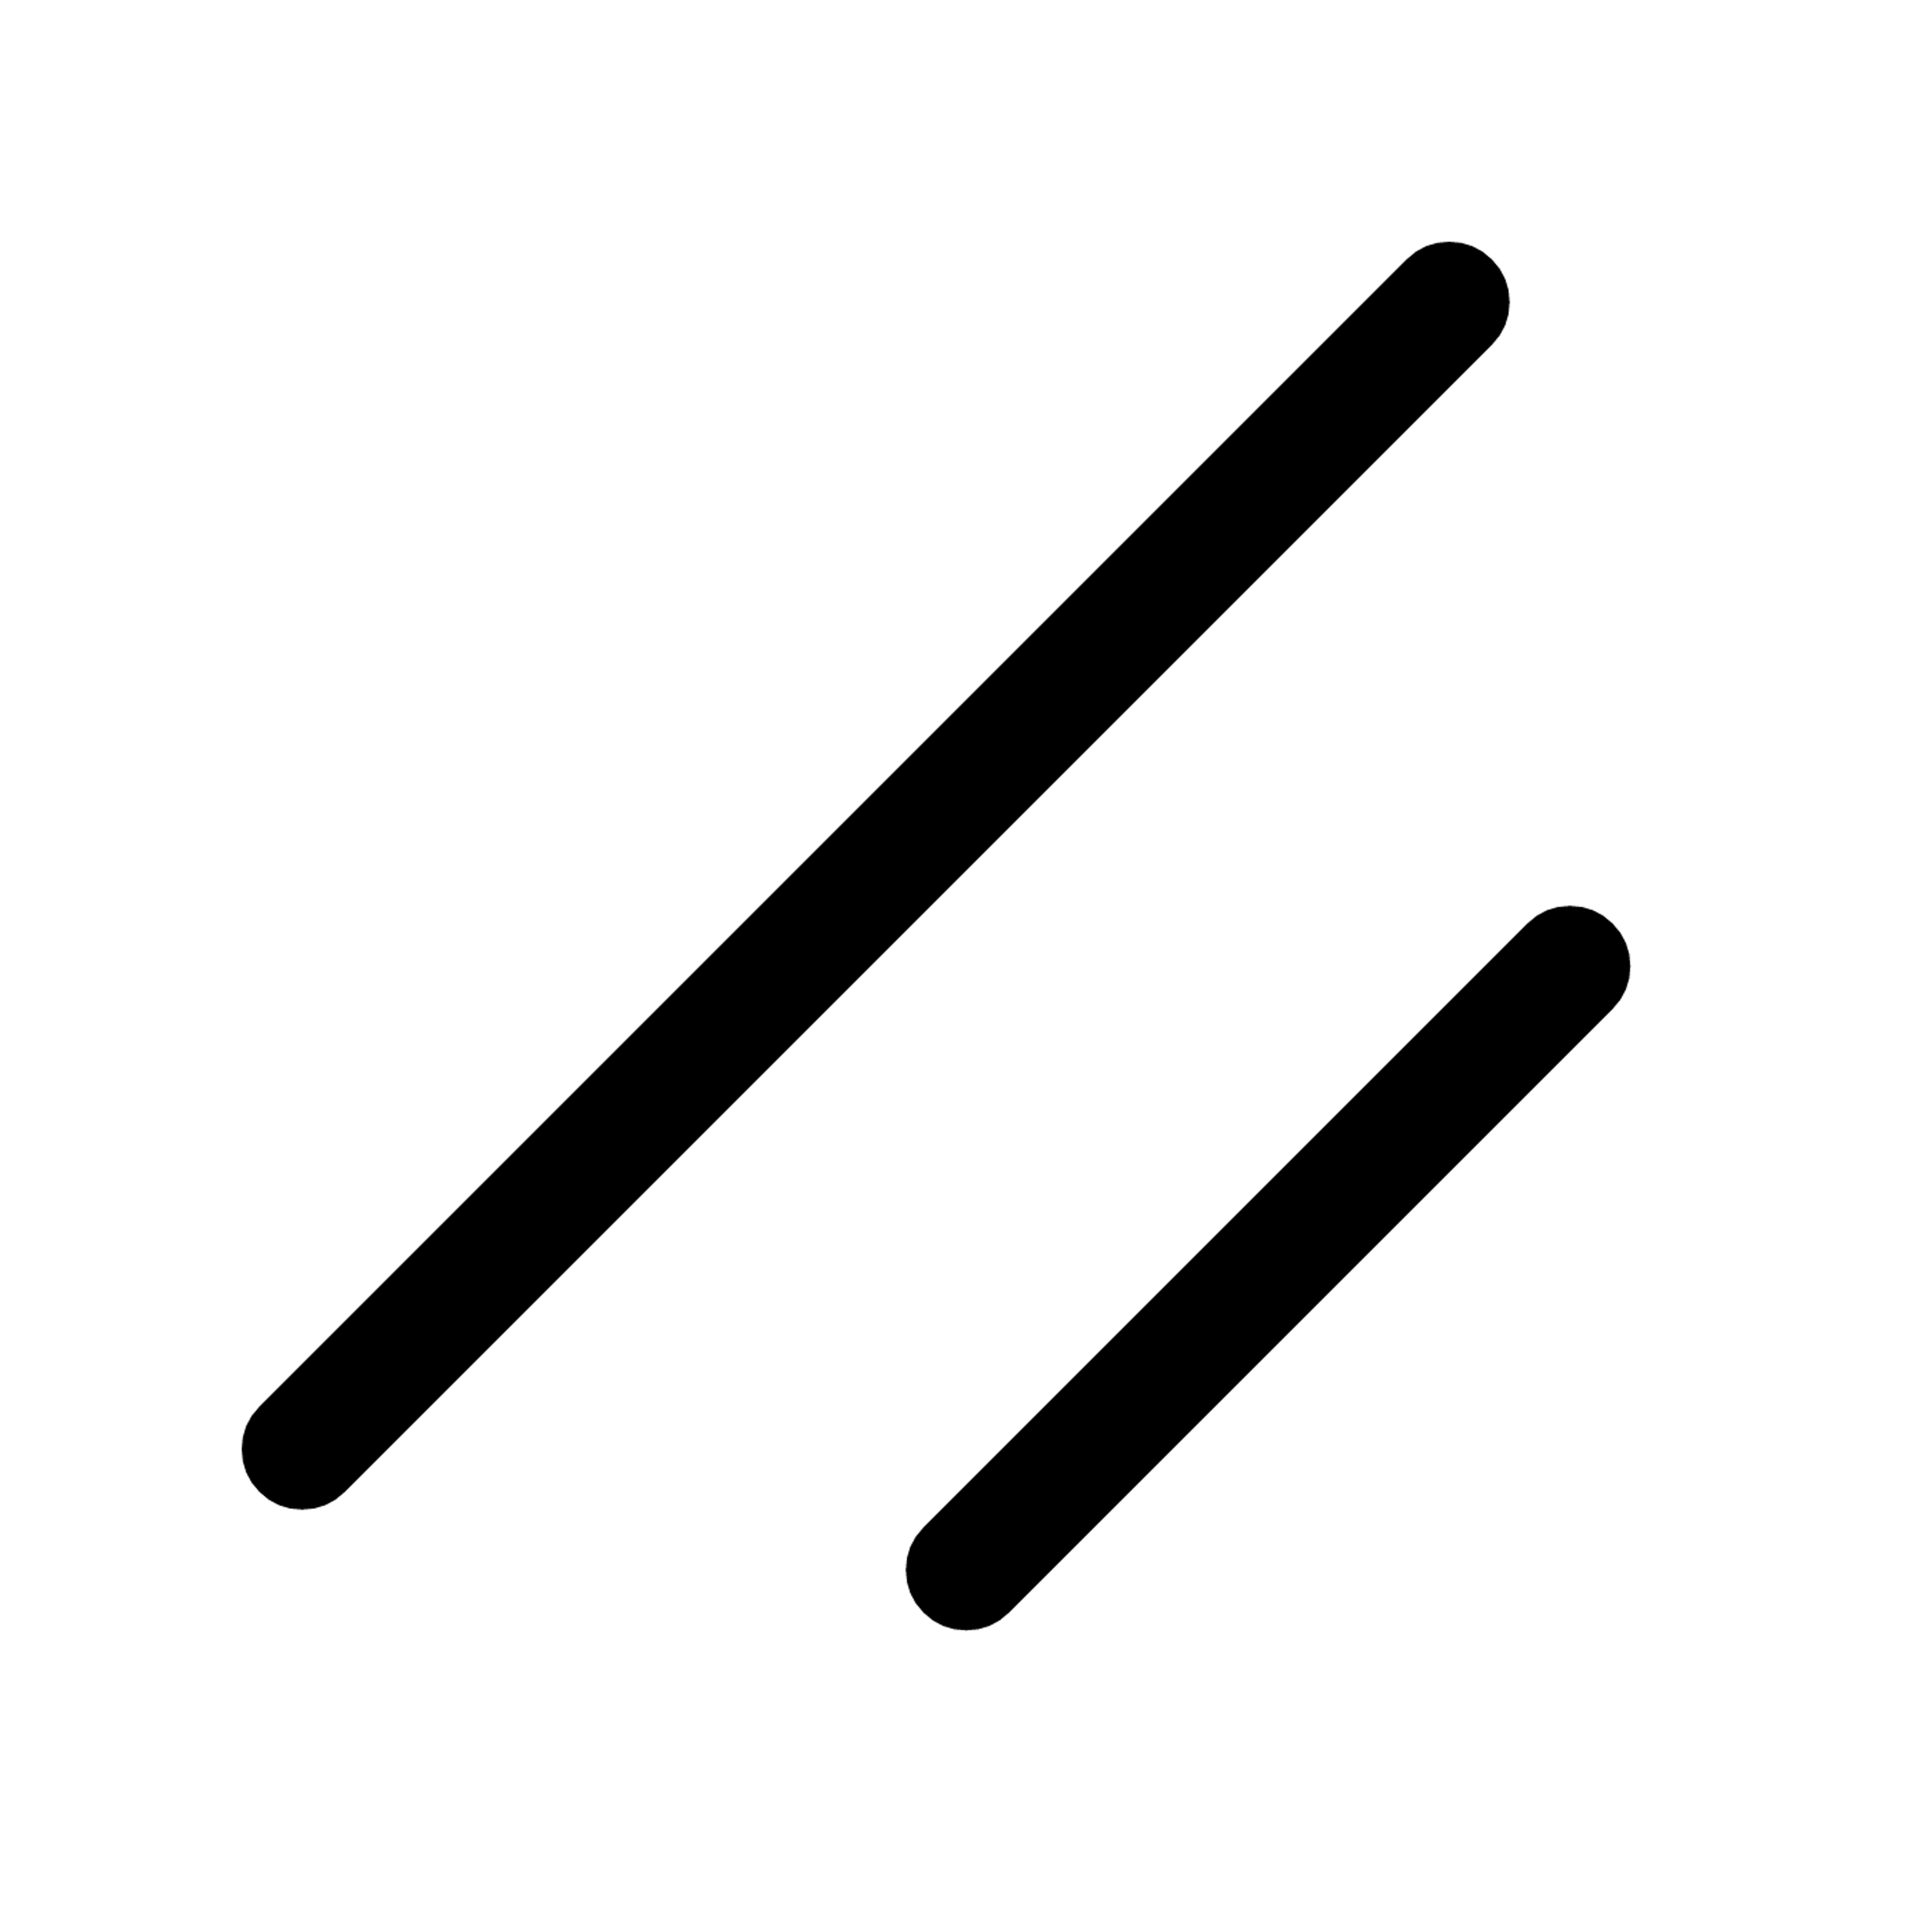 Shadcn/ui logo